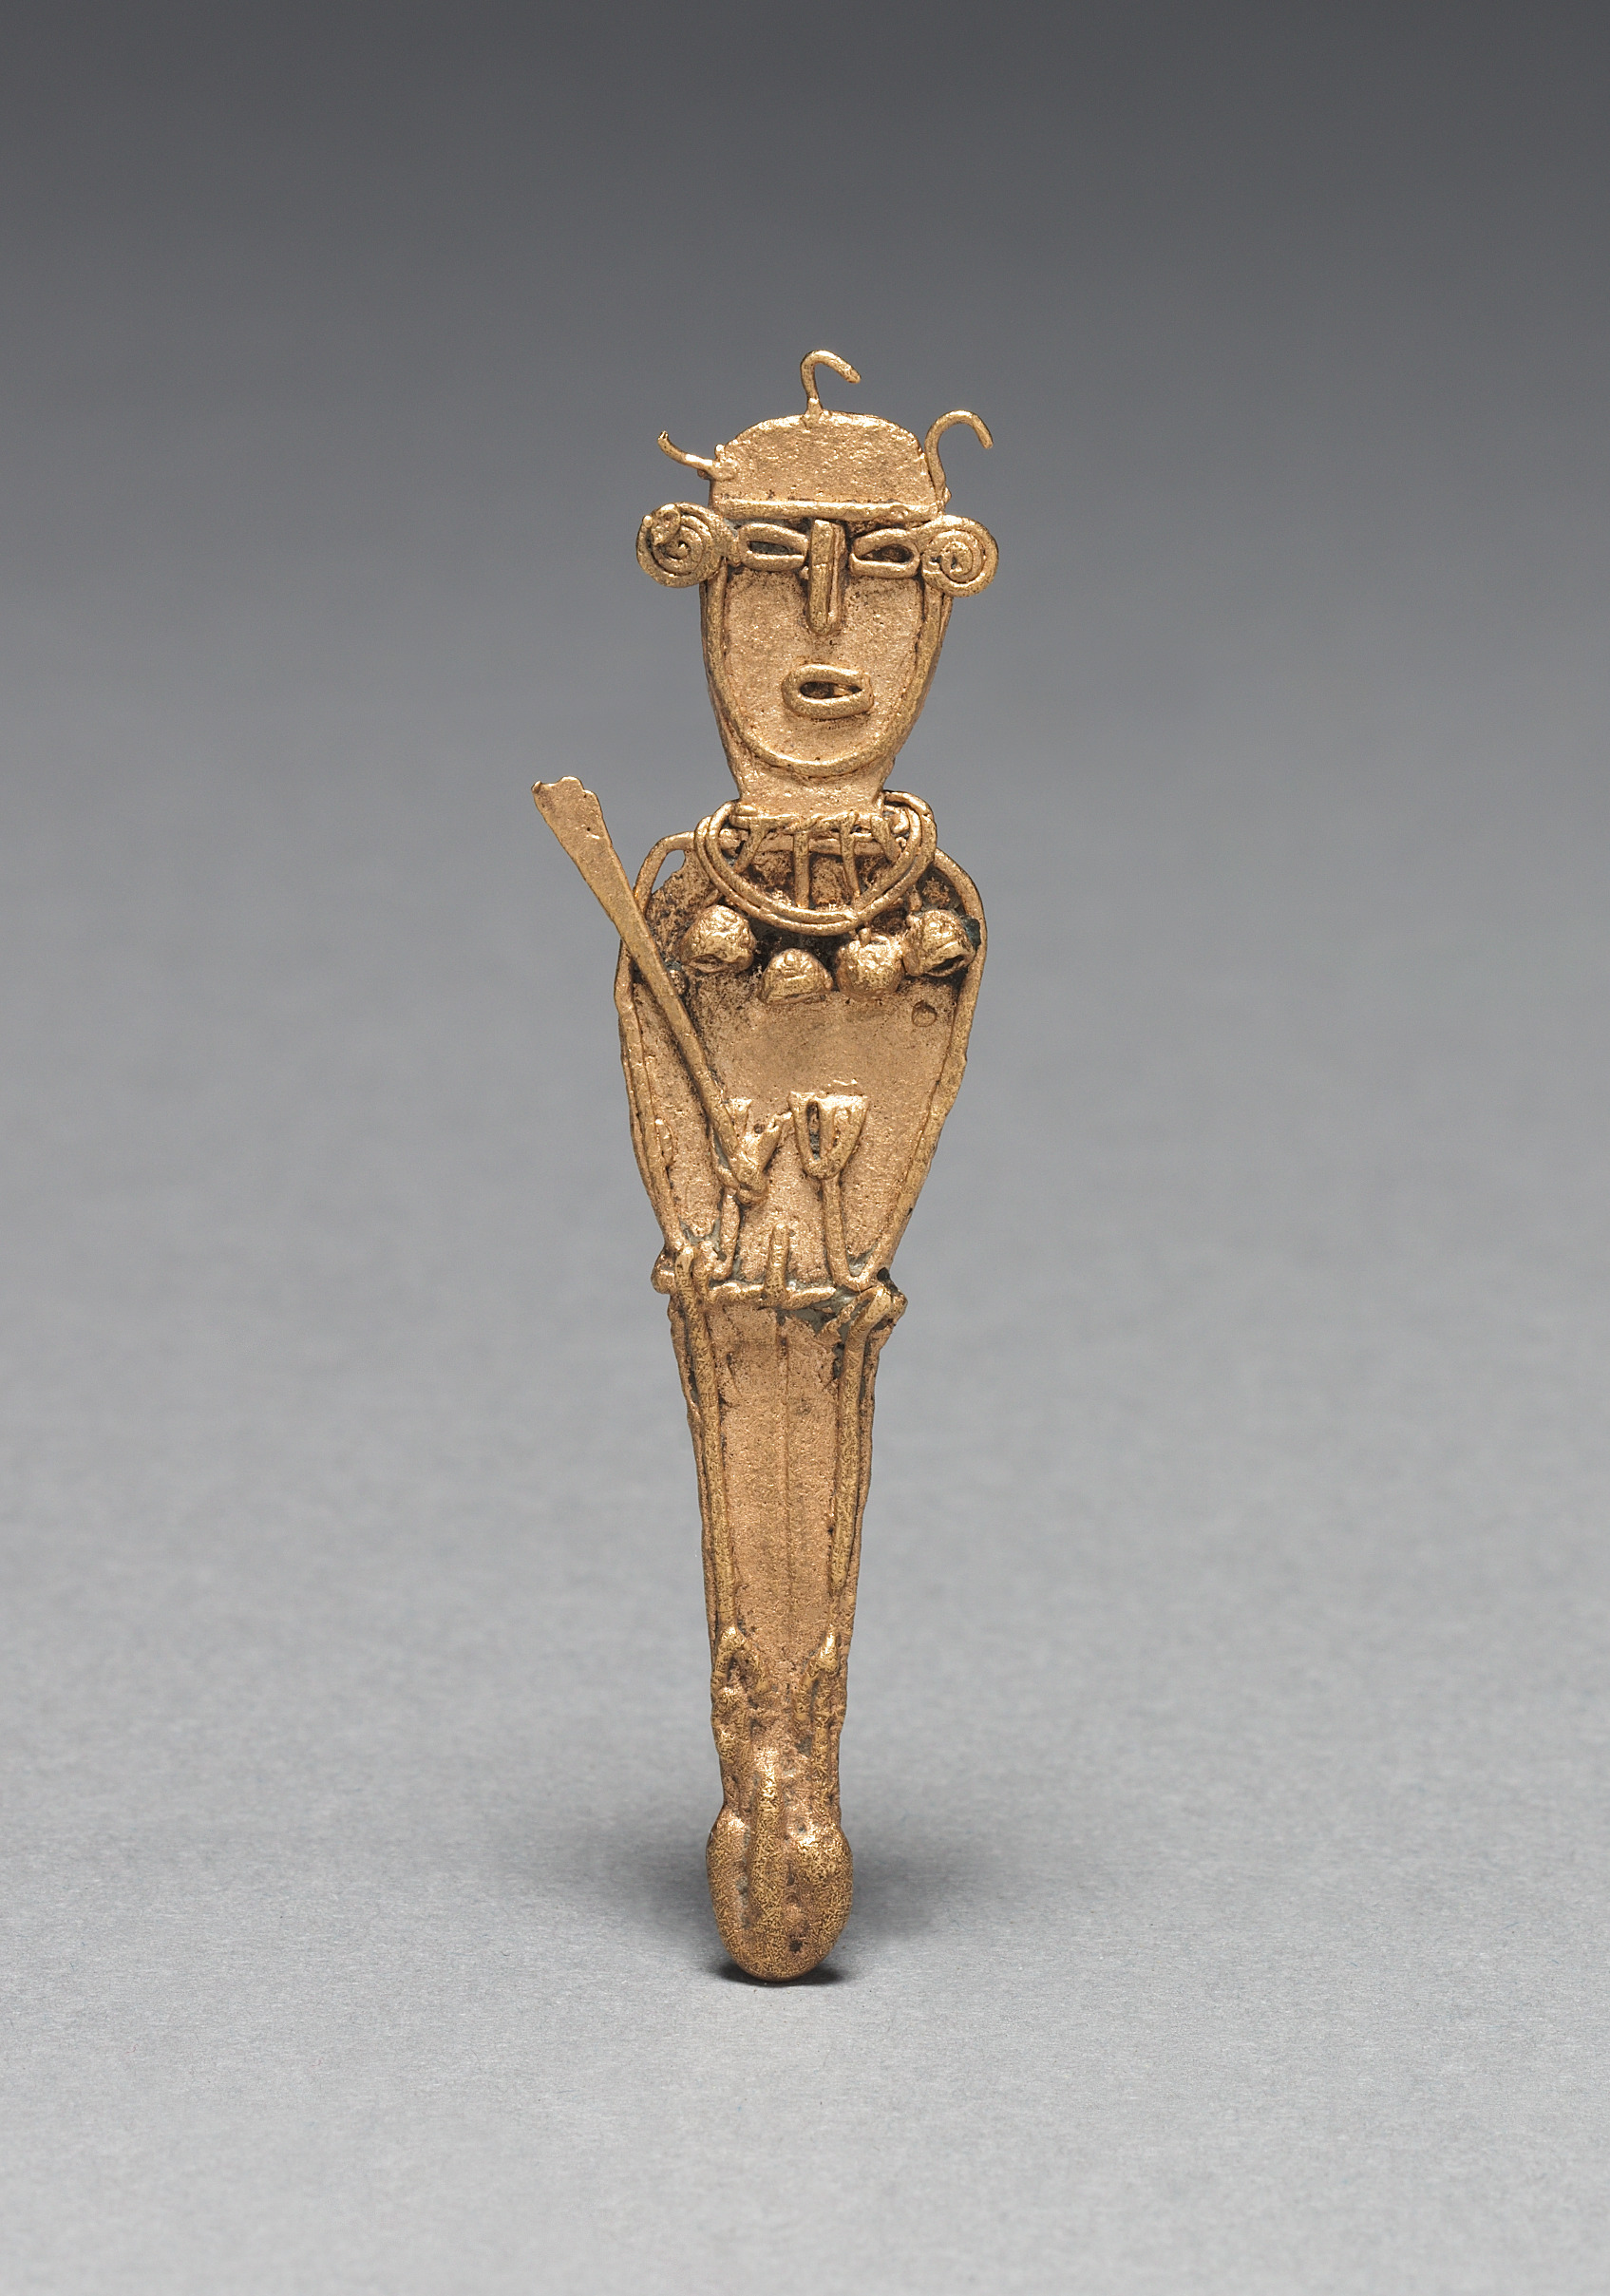 Tunjos (Votive Offering Figurine)